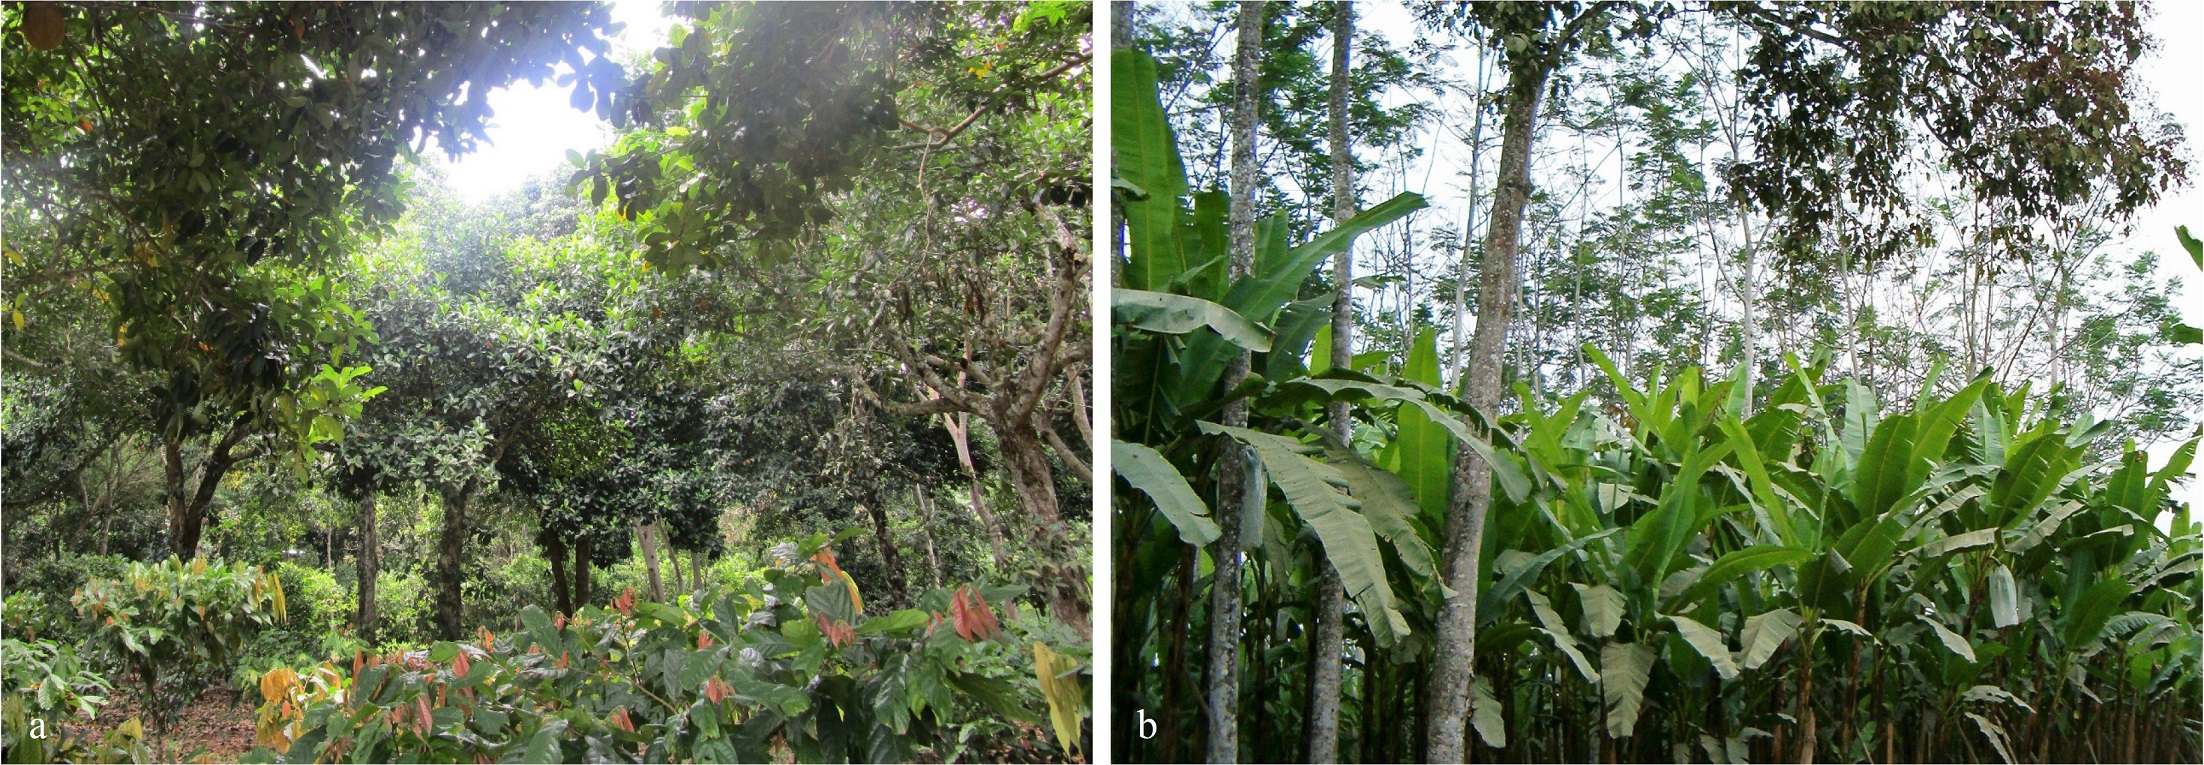 Asociación de cultivos en sistemas agroforestales: a. Perú-Yurimaguas, b. Ecuador-La Maná.